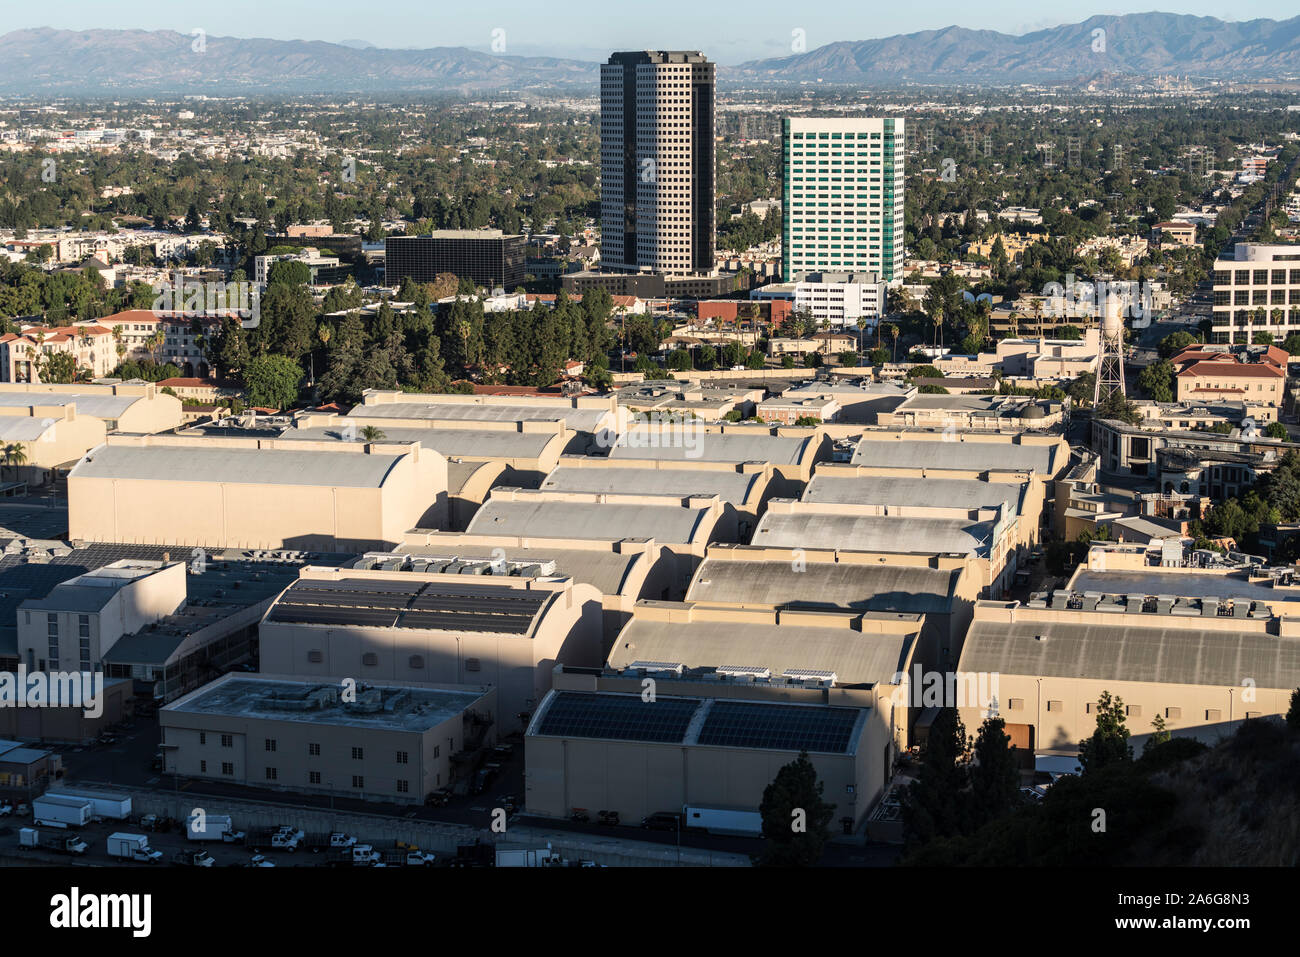 Burbank, Californie, USA - 20 octobre 2019 - Matin voir l'historique des étapes de son studio Warner Bros et Burbank Media dans les bâtiments du quartier San Banque D'Images